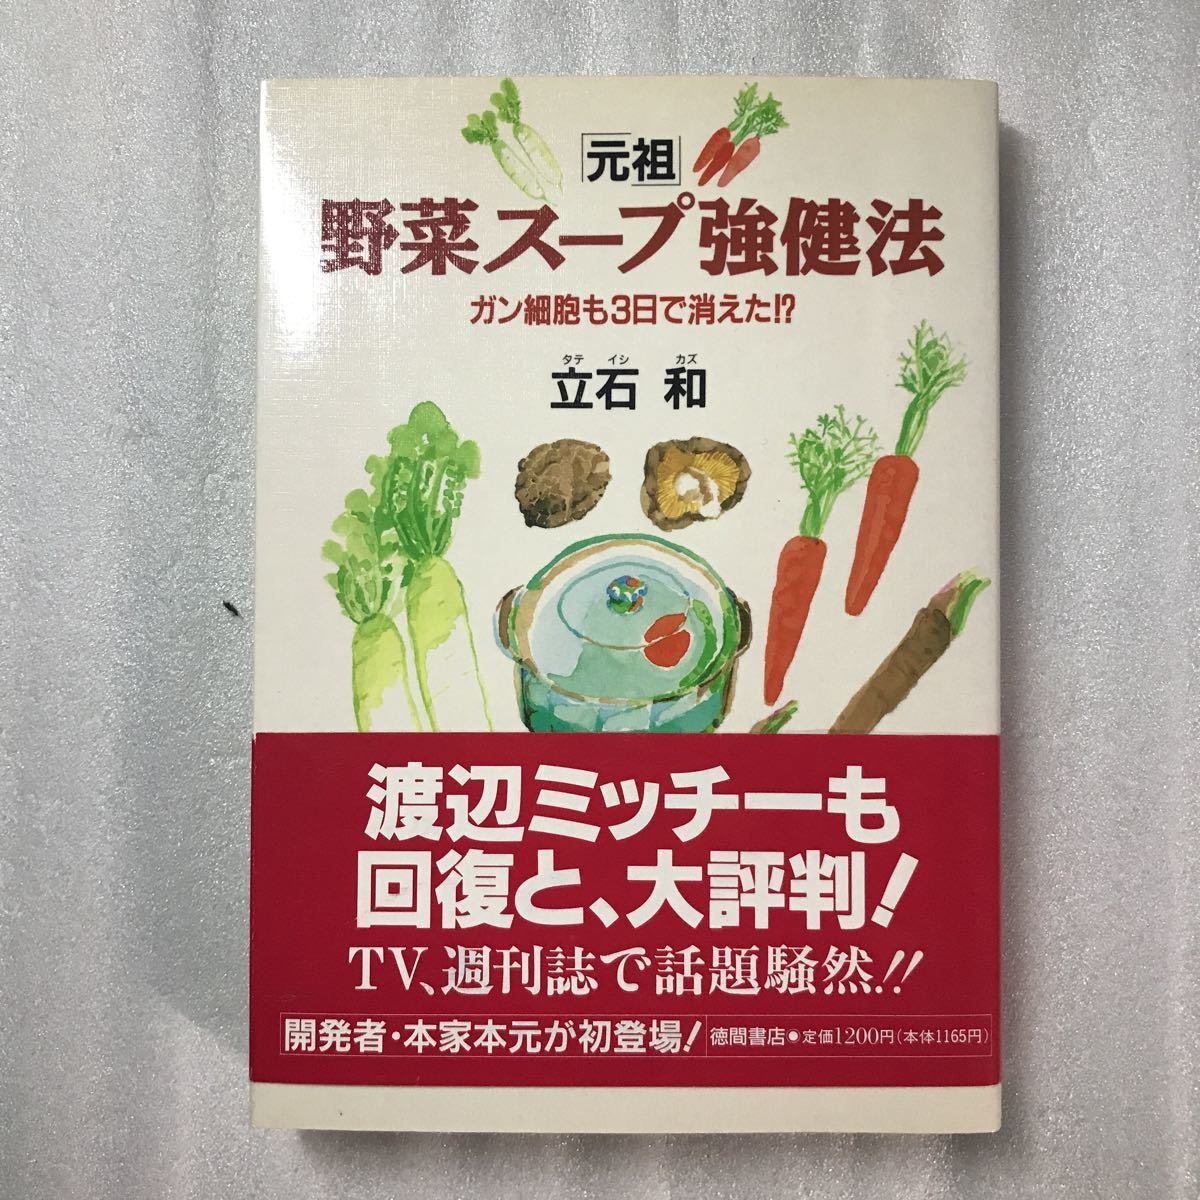 元祖」野菜スープ強健法 : ガン細胞も3日で消えた!? 立石 和 - 本